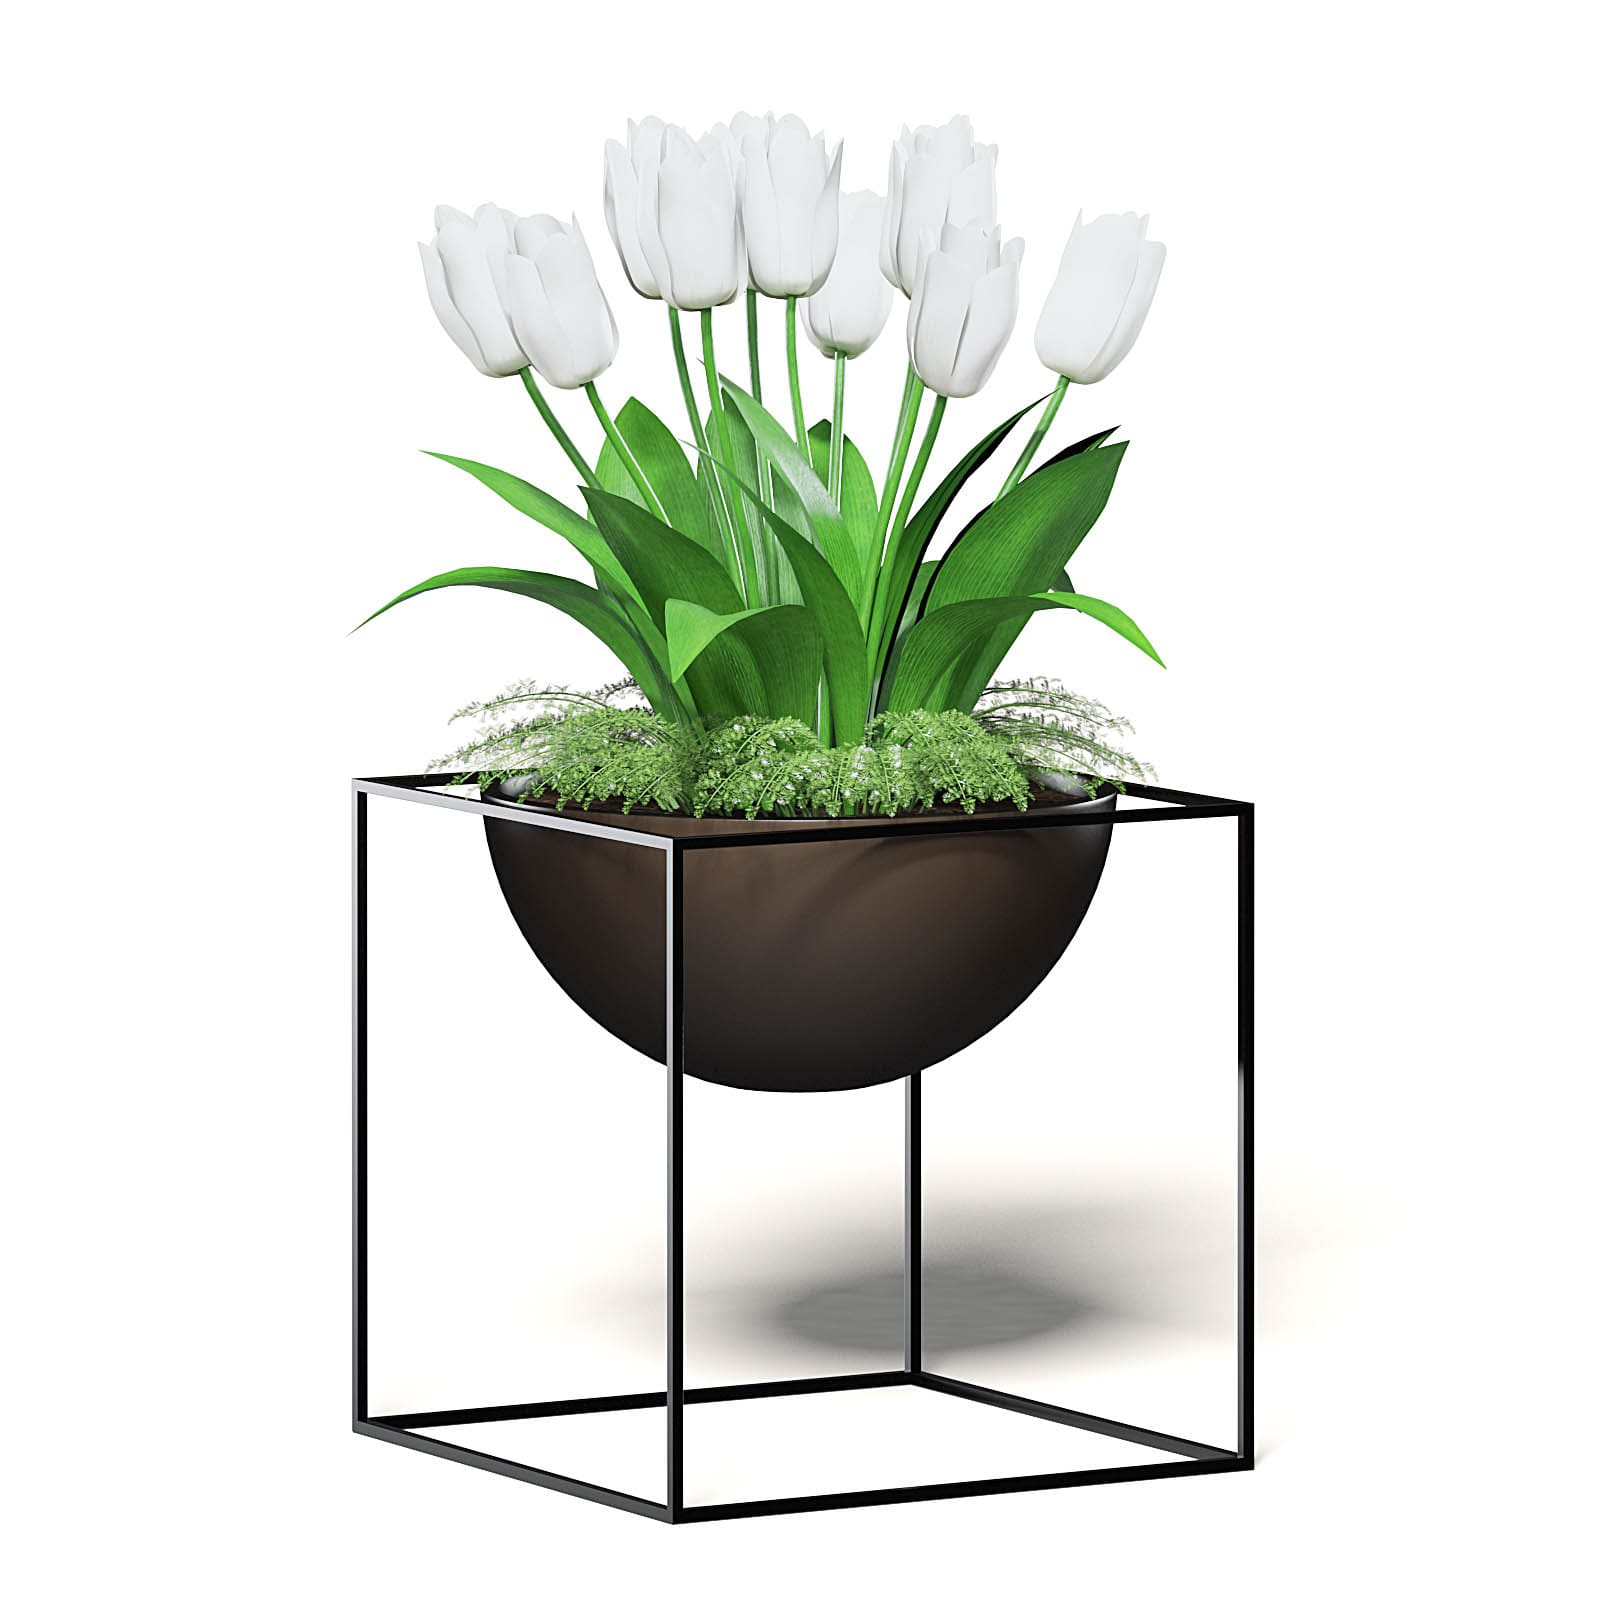 Bekwaamheid AIDS Onbepaald White Tulips 3D Model